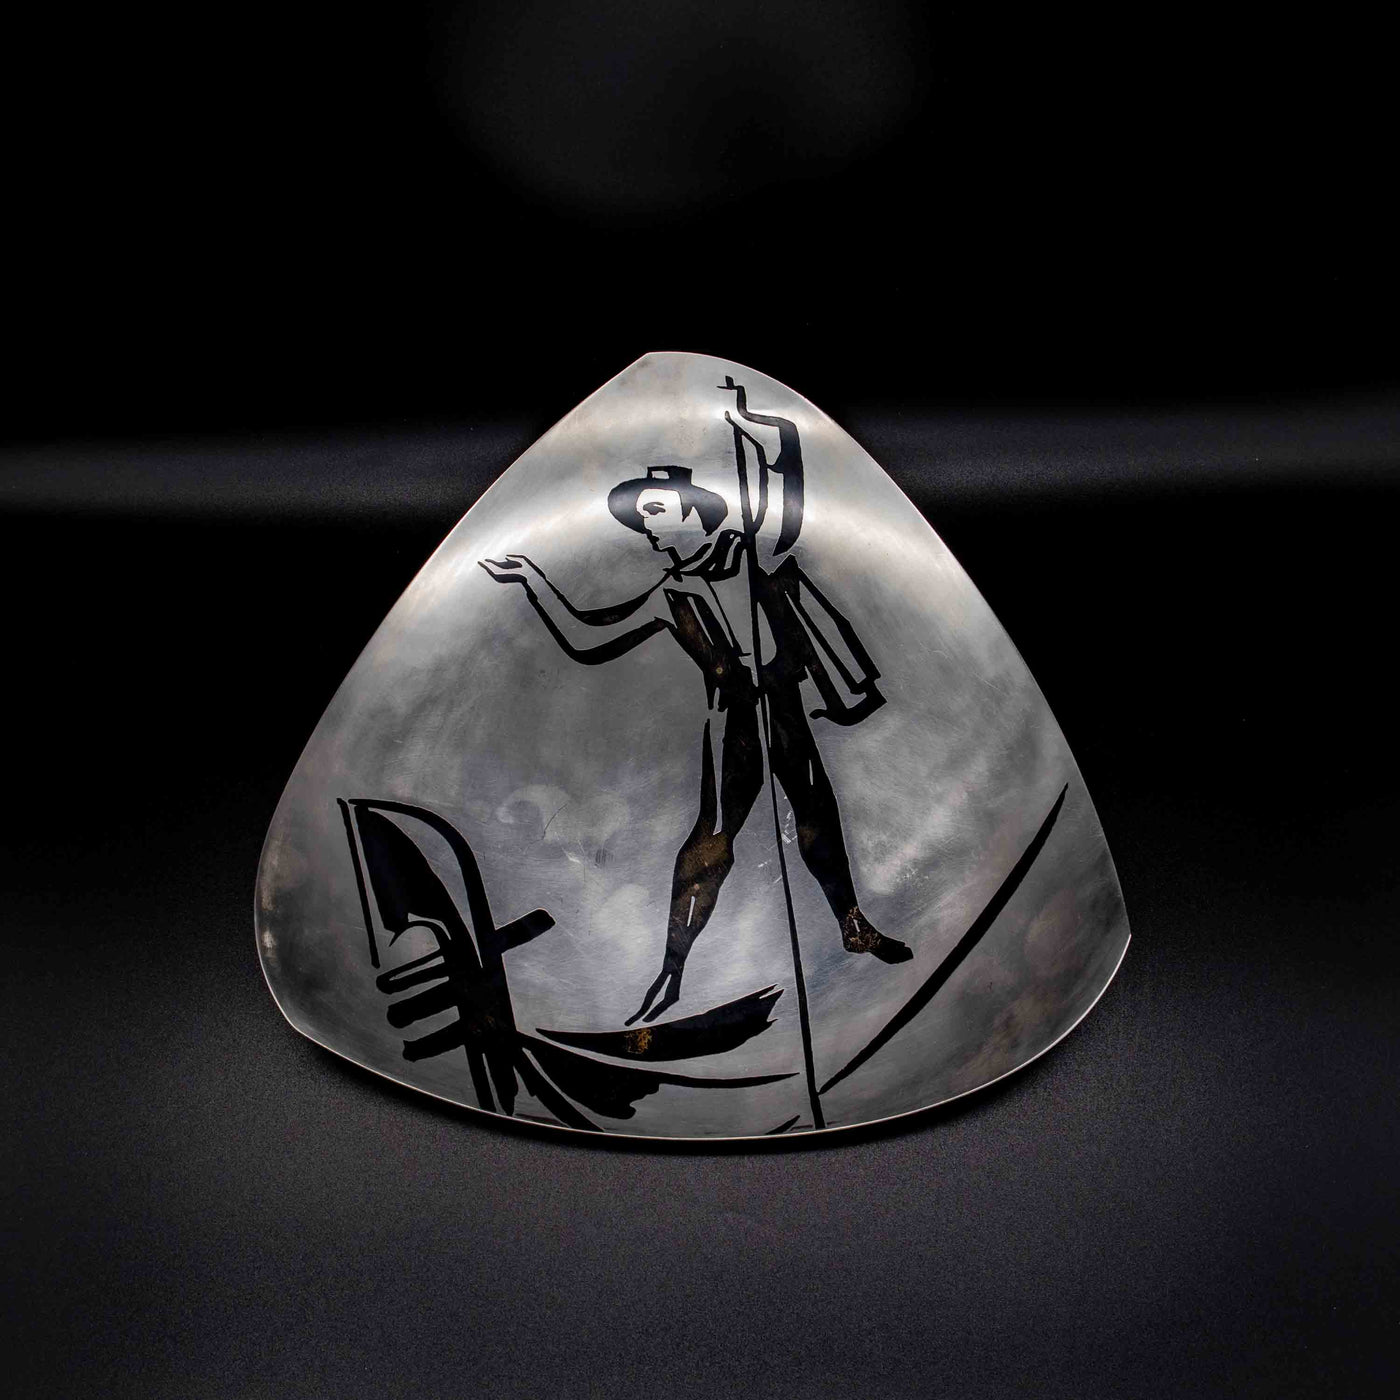 WMF Ikora Schale mit Gondoliere, von oben fotografiert